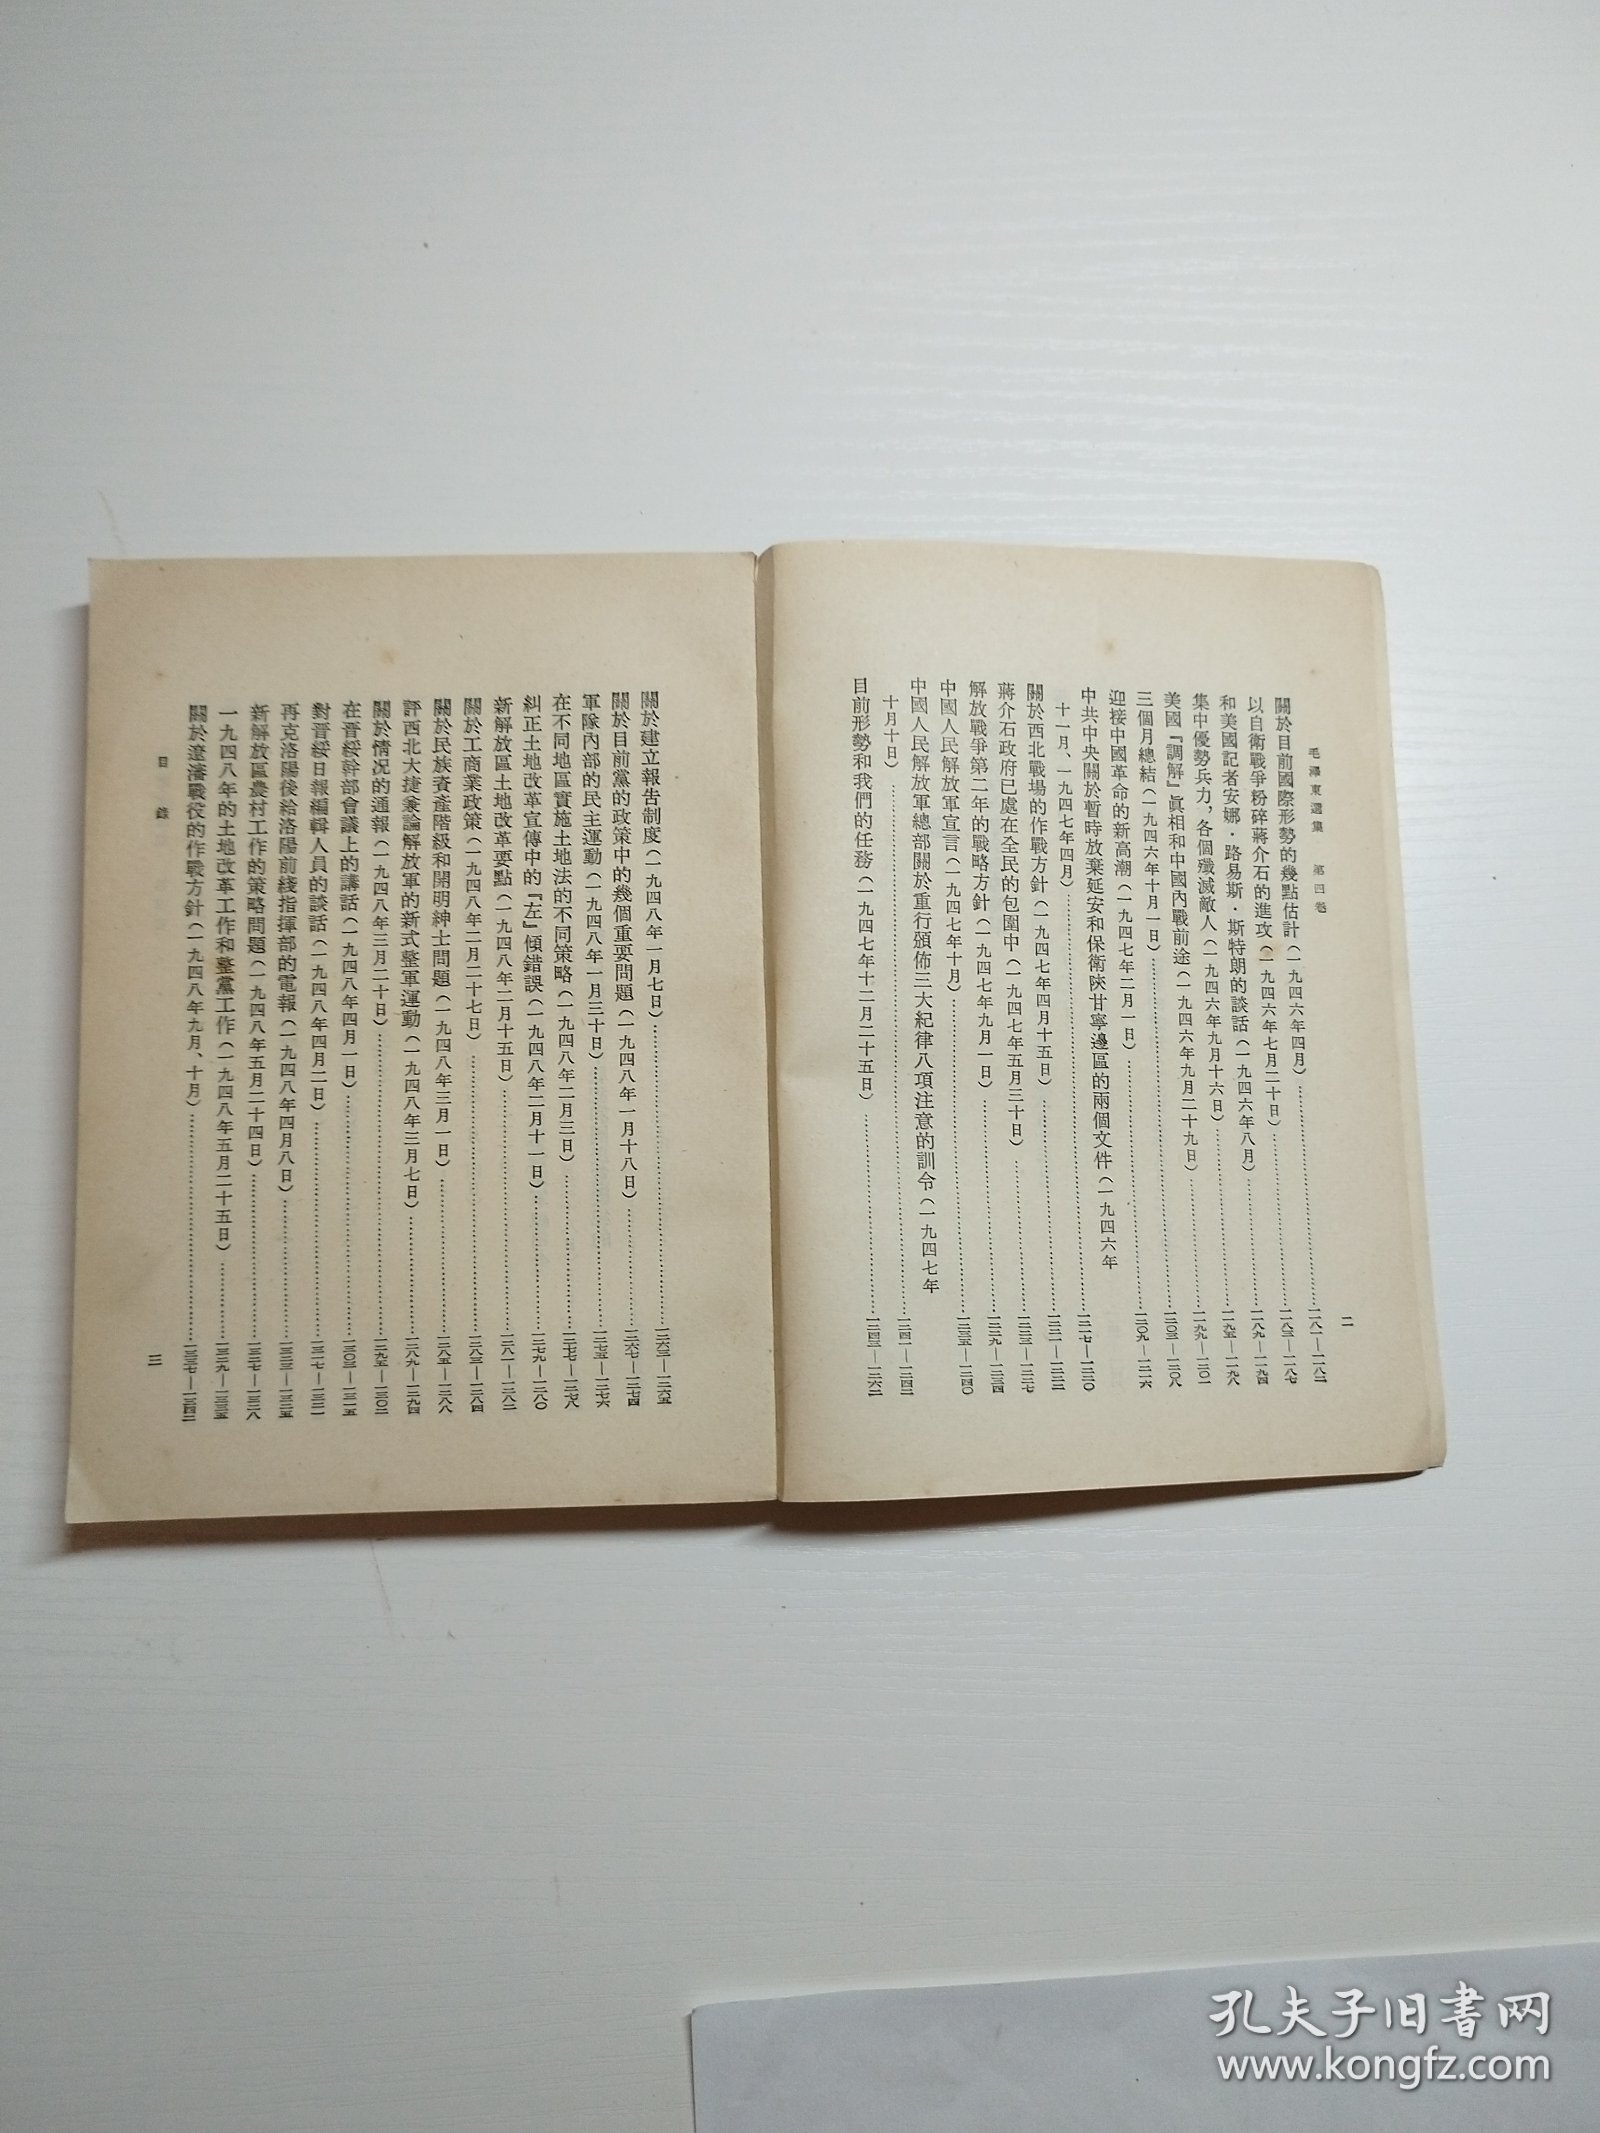 编号2033 毛泽东选集第4卷 白皮繁体 1966年5月上海印刷，全书内页干净，无划线、无写字、无涂改，没有阅读痕迹。封底有字见图 整体品相较佳，凑成套的拍，需要更多细节请私聊